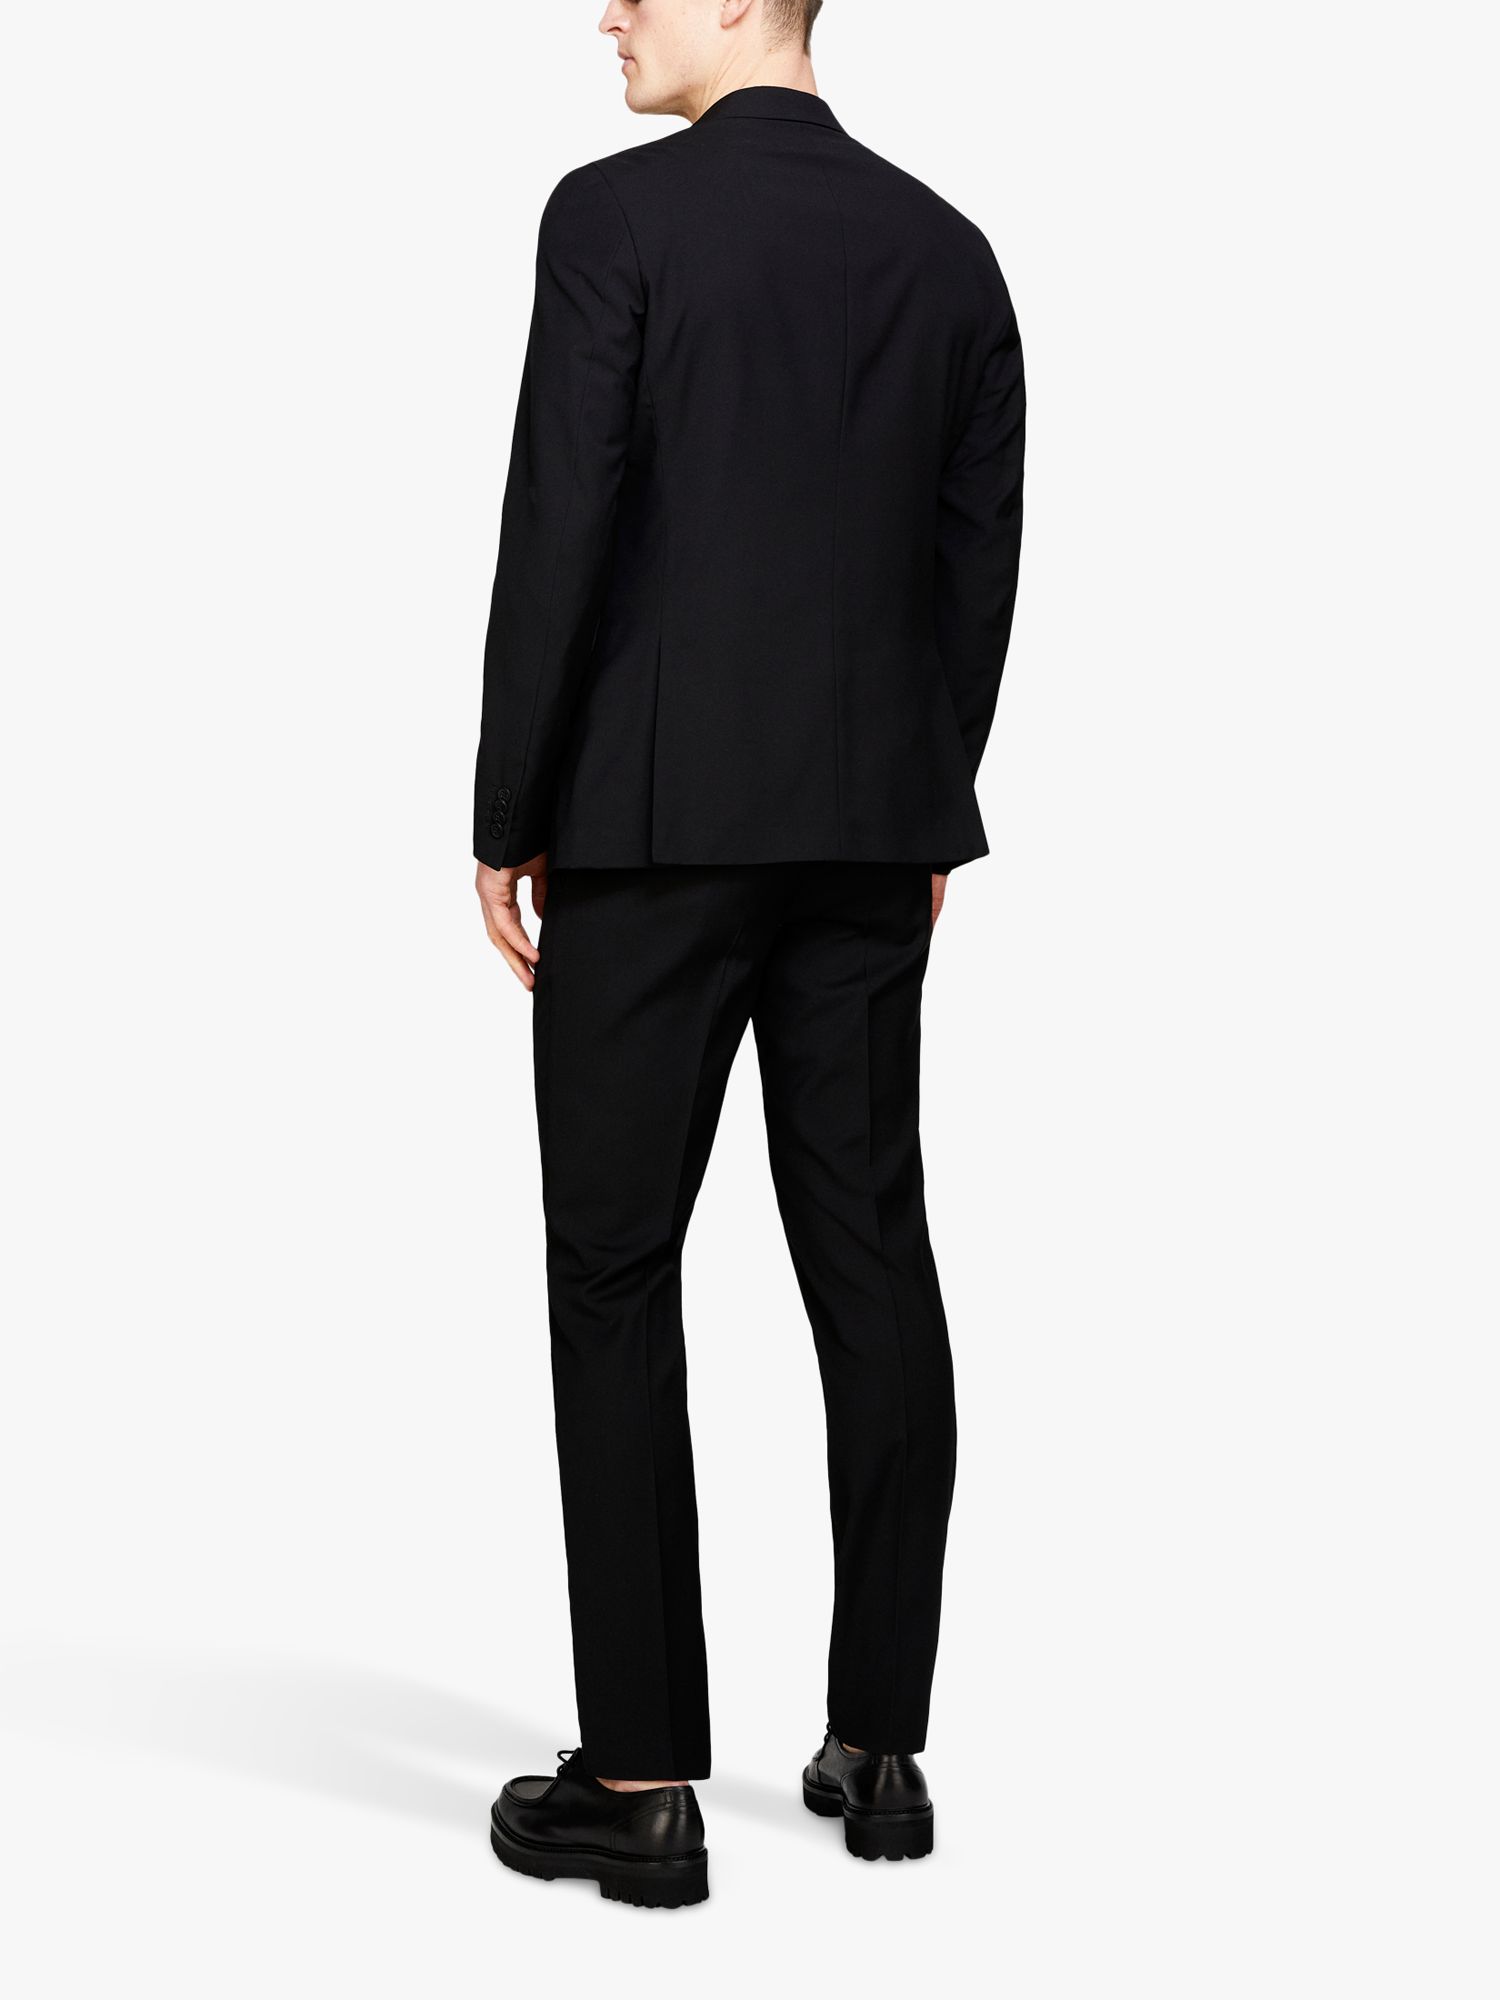 SISLEY Formal Slim Fit Trousers, Black, 30